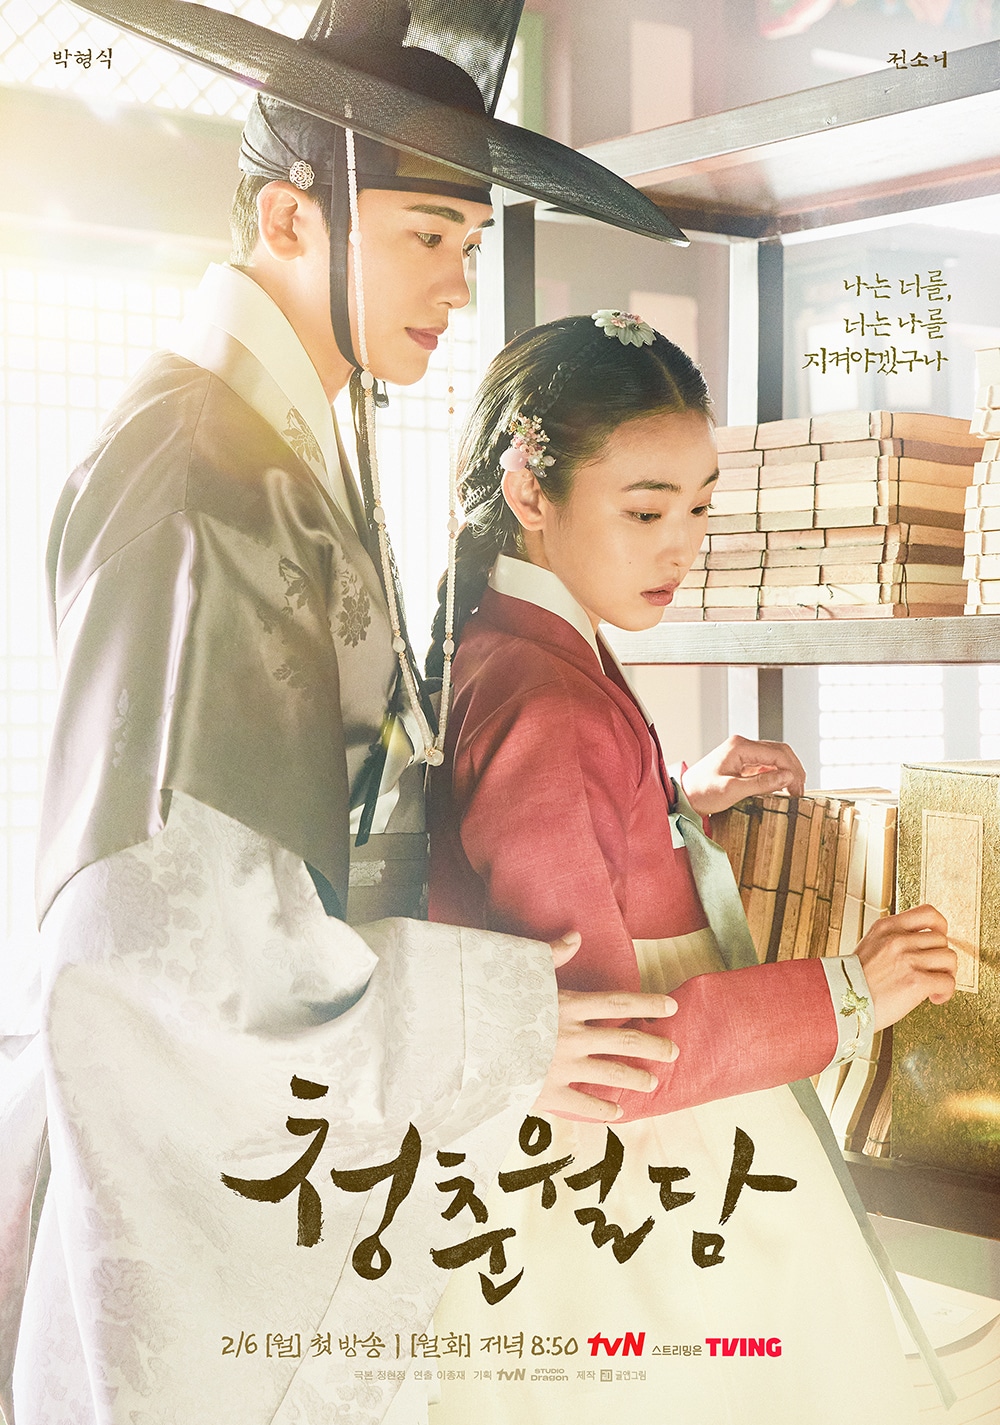 tvNの新作時代劇『青春超壁』は、韓国のネット上で話題となっている